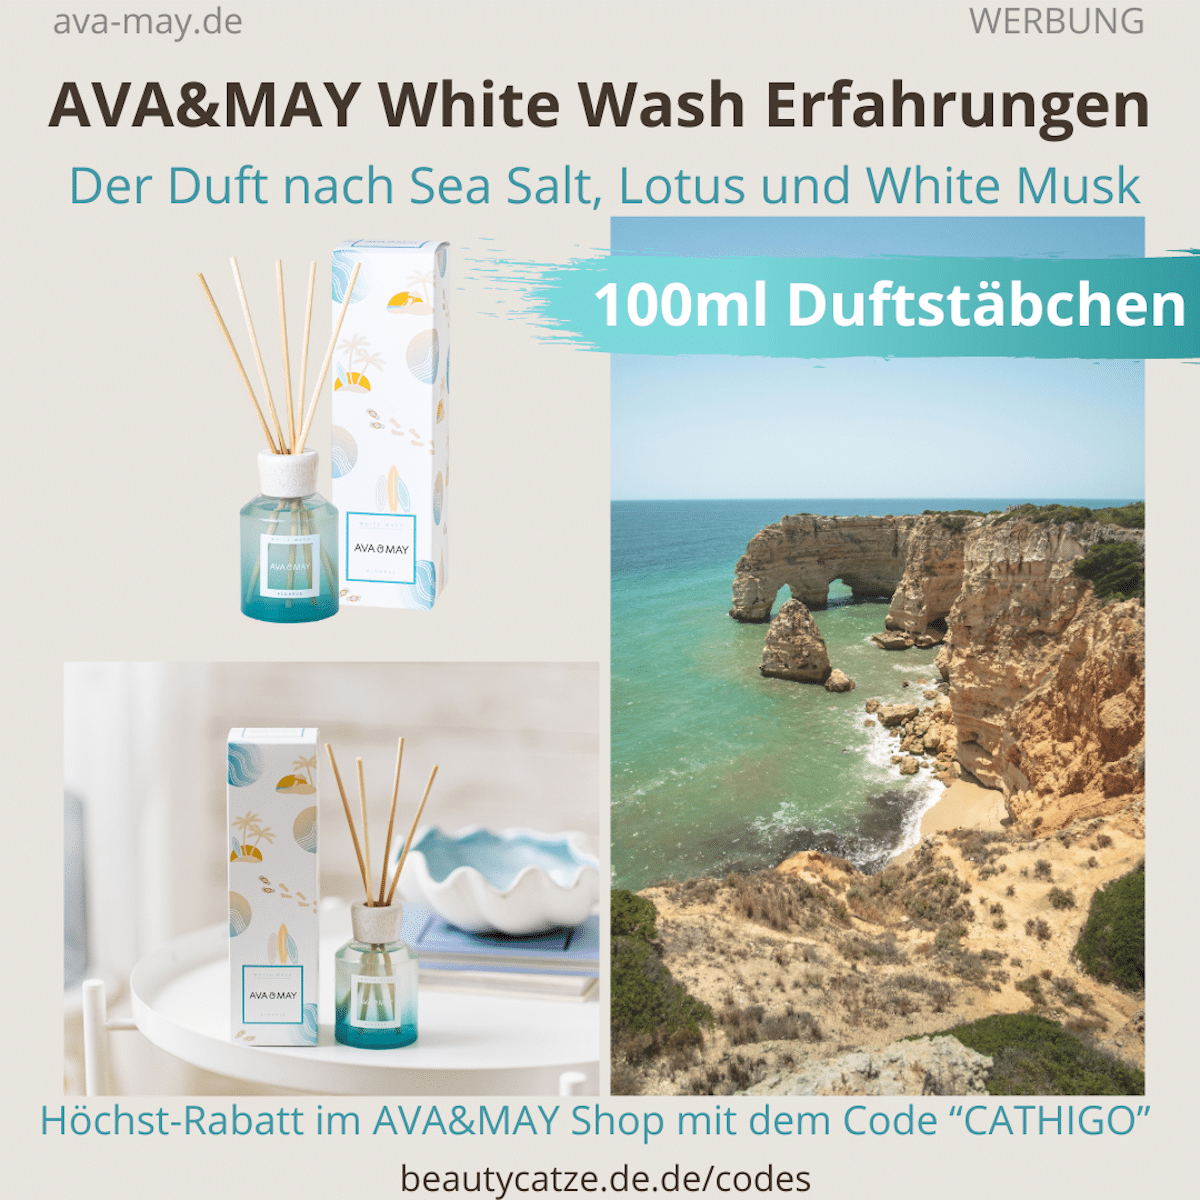 AVA&MAY Erfahrungen WHITE WASH ALGARVE Duftstäbchen Erfahrungen Test